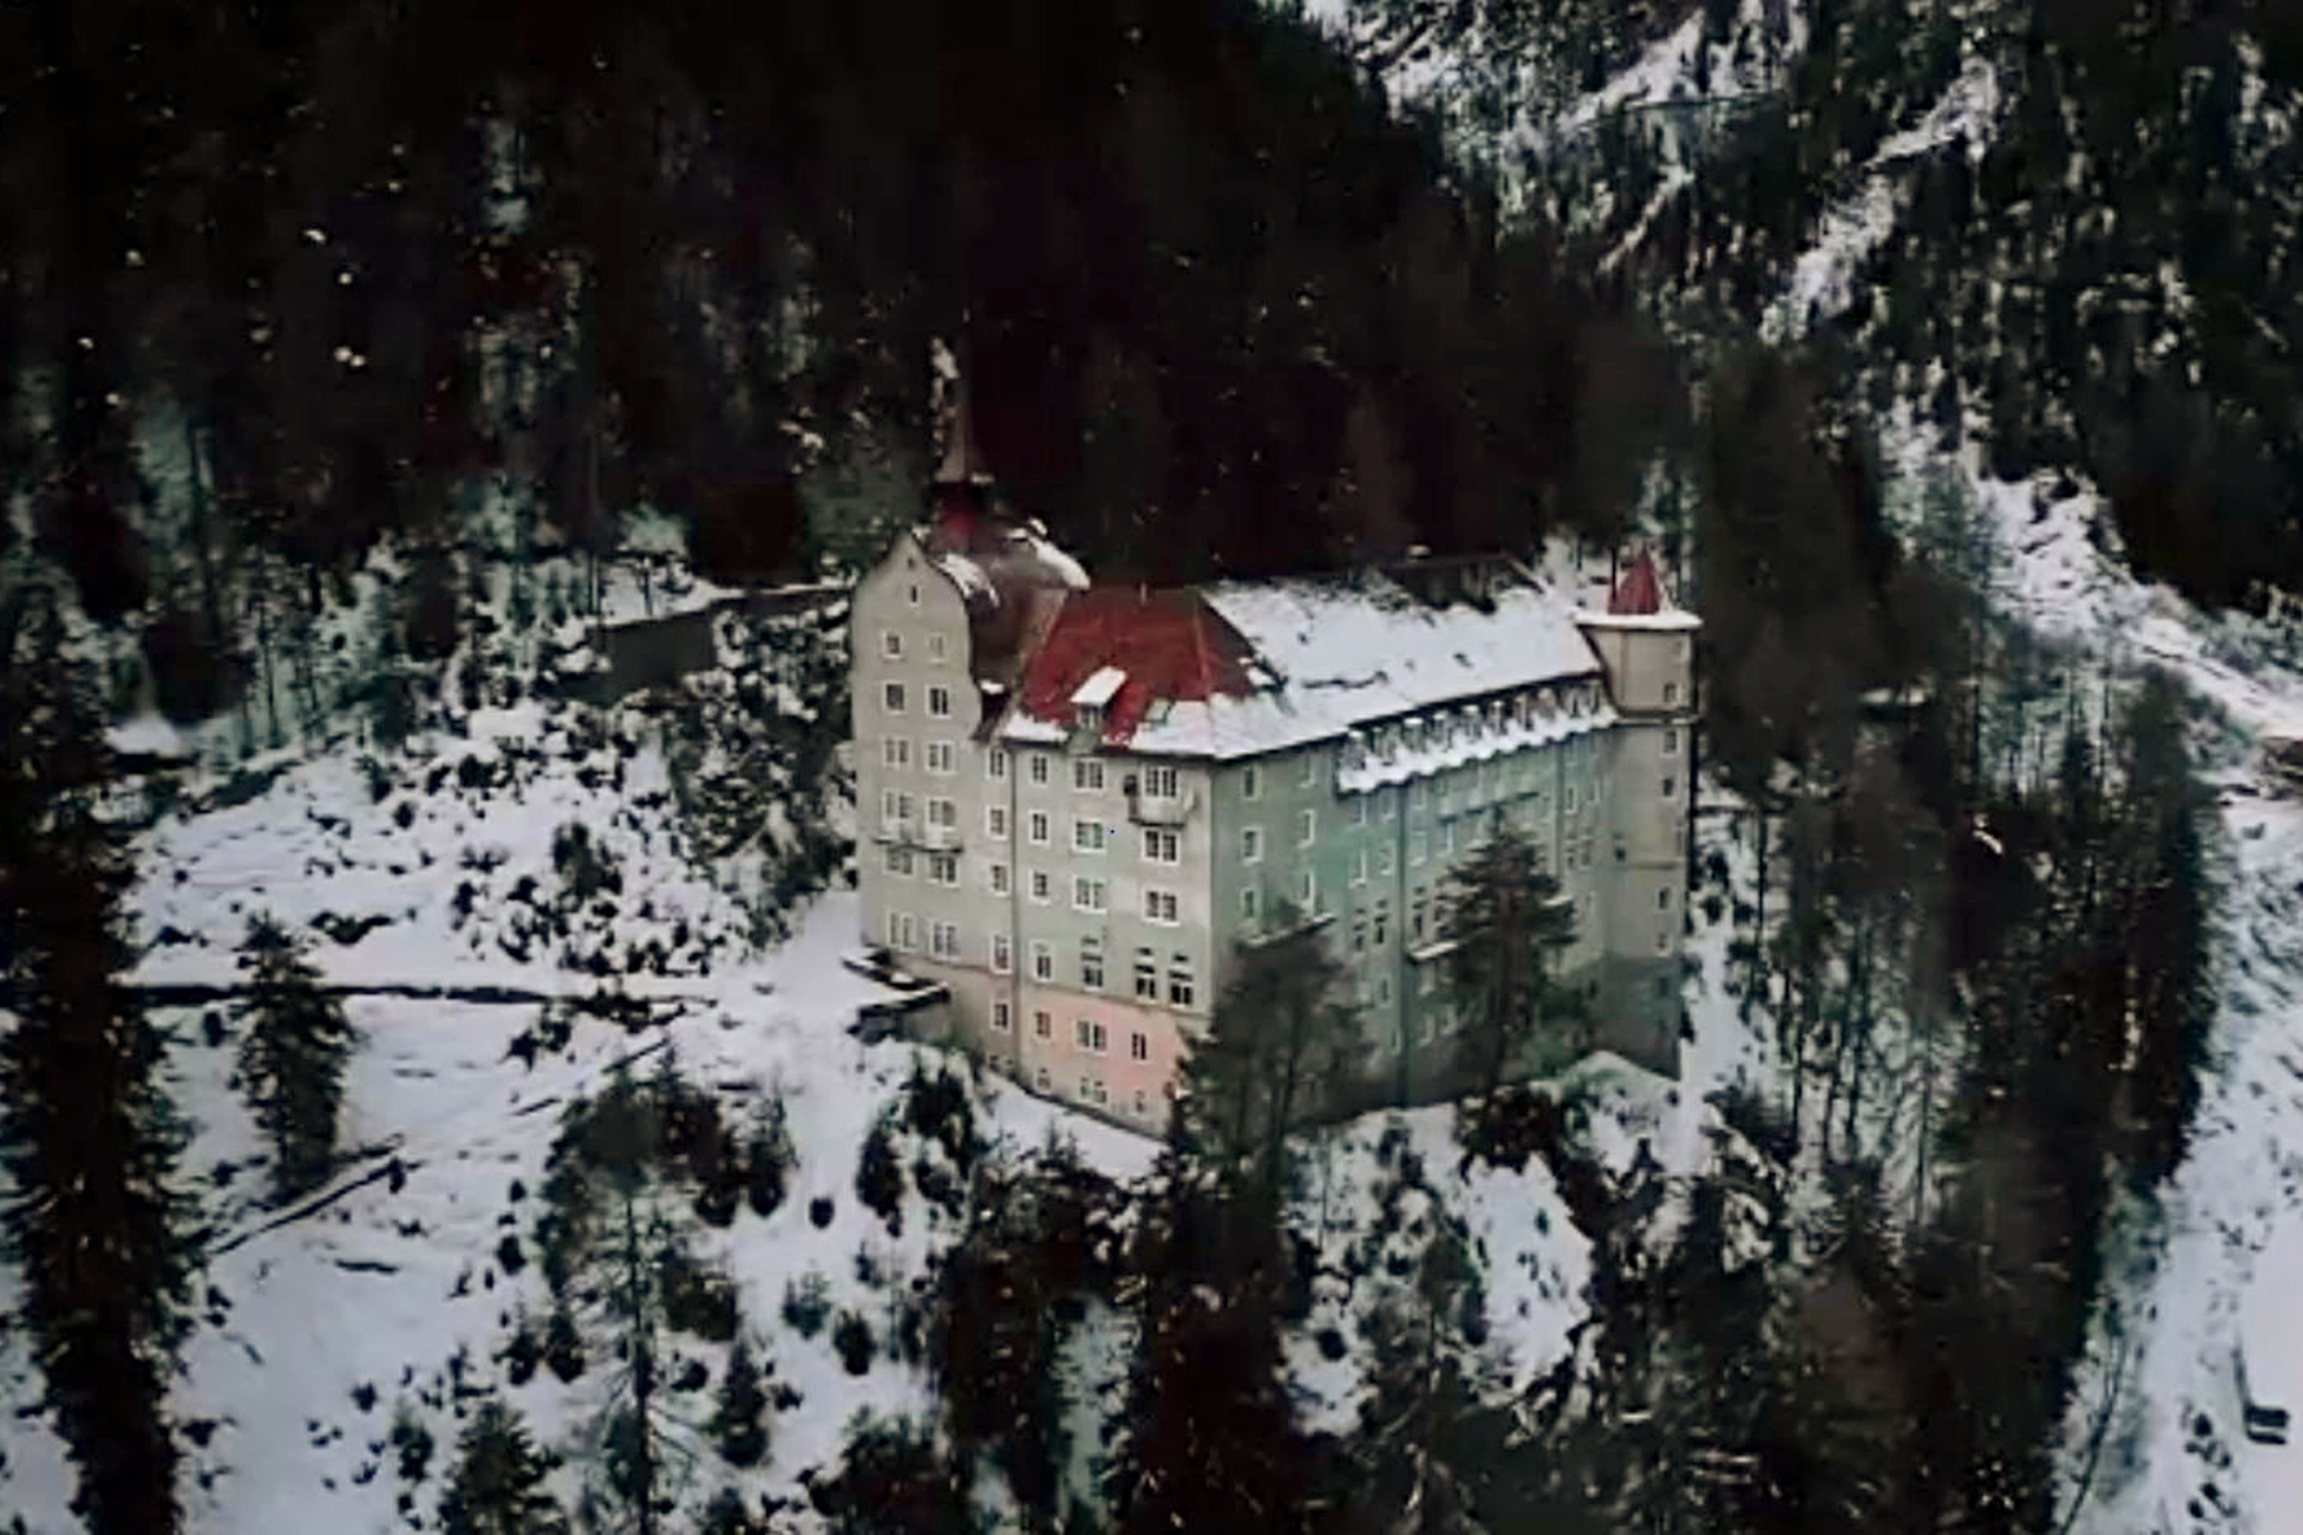 SRF bi de Lüt – Sagenhaft Geschichten aus der mystischen Schweiz Folge 1 Im Kurhotel Val Sinestra sind die Hotelgäste nie ganz alleine. Ein ehemaliger Gast soll in den alten Gemäuern umherspuken. 2021 